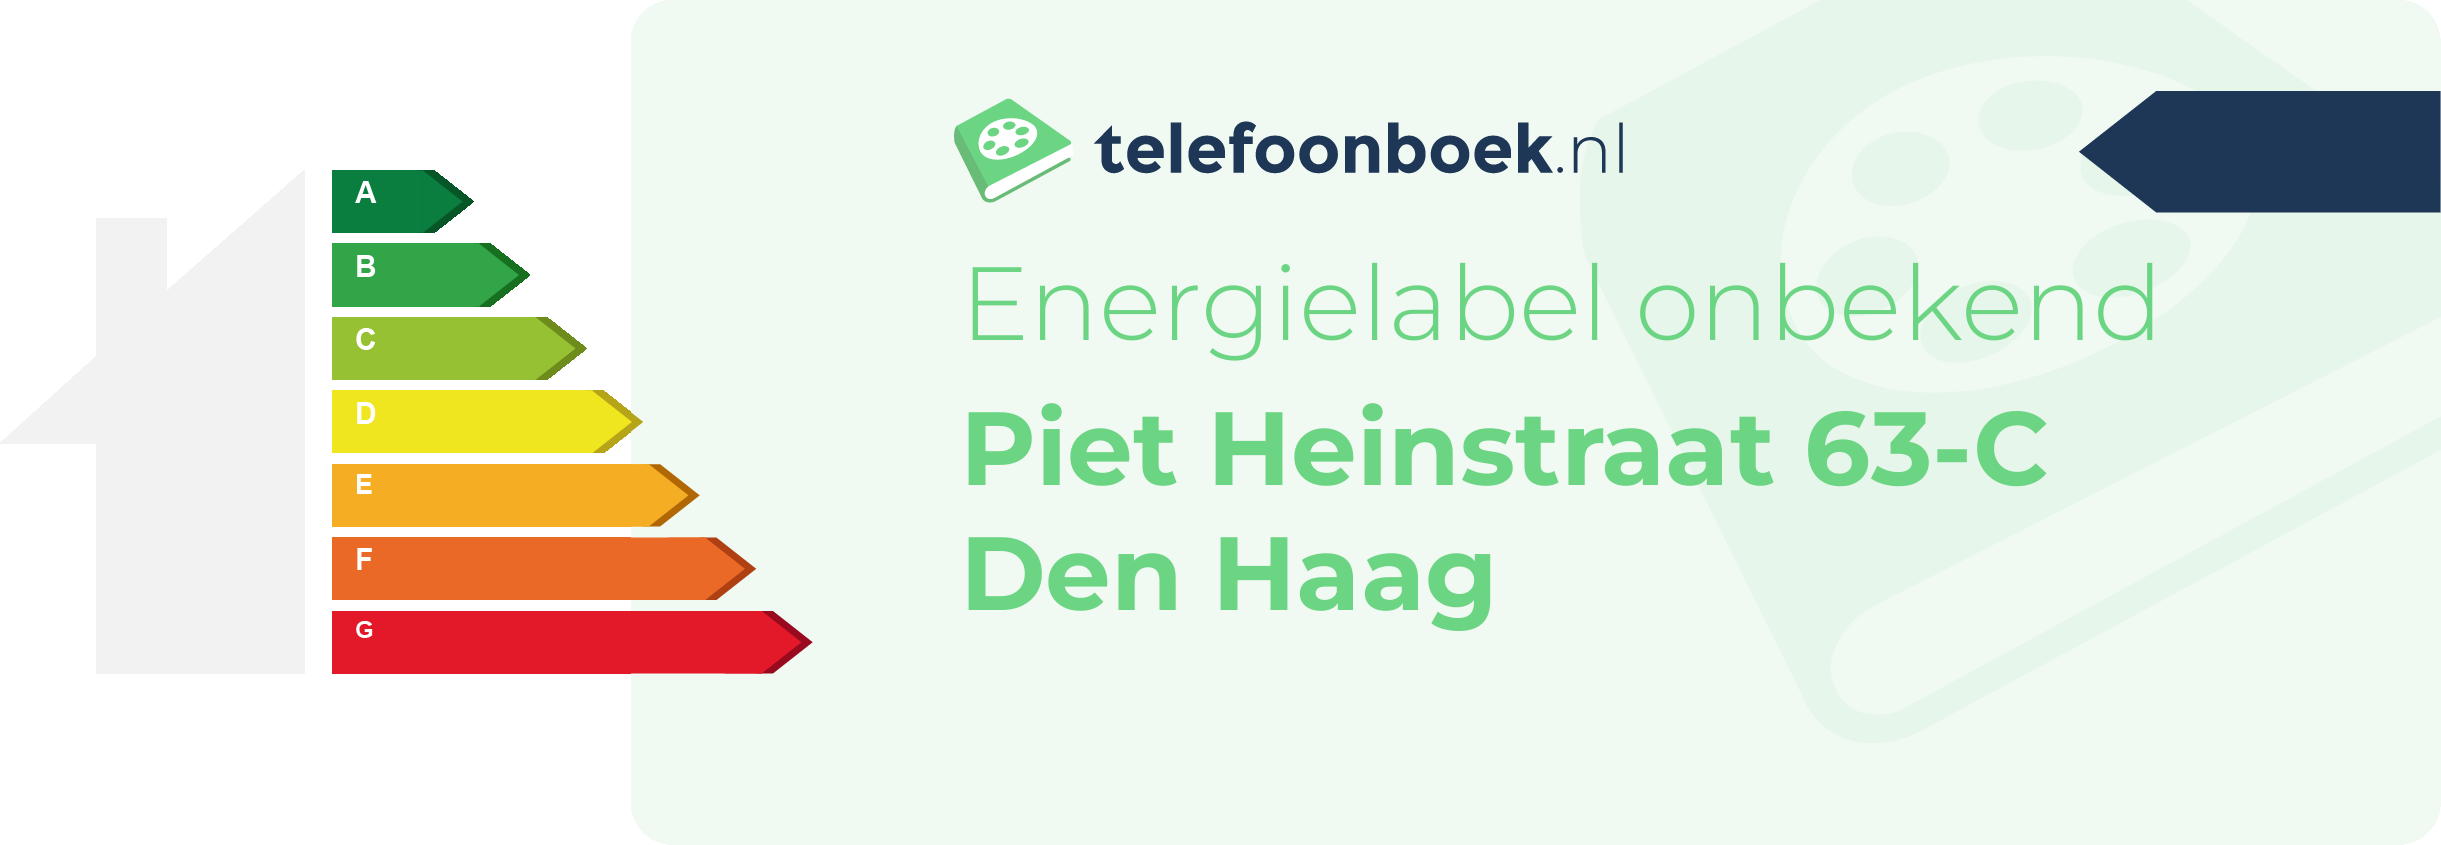 Energielabel Piet Heinstraat 63-C Den Haag